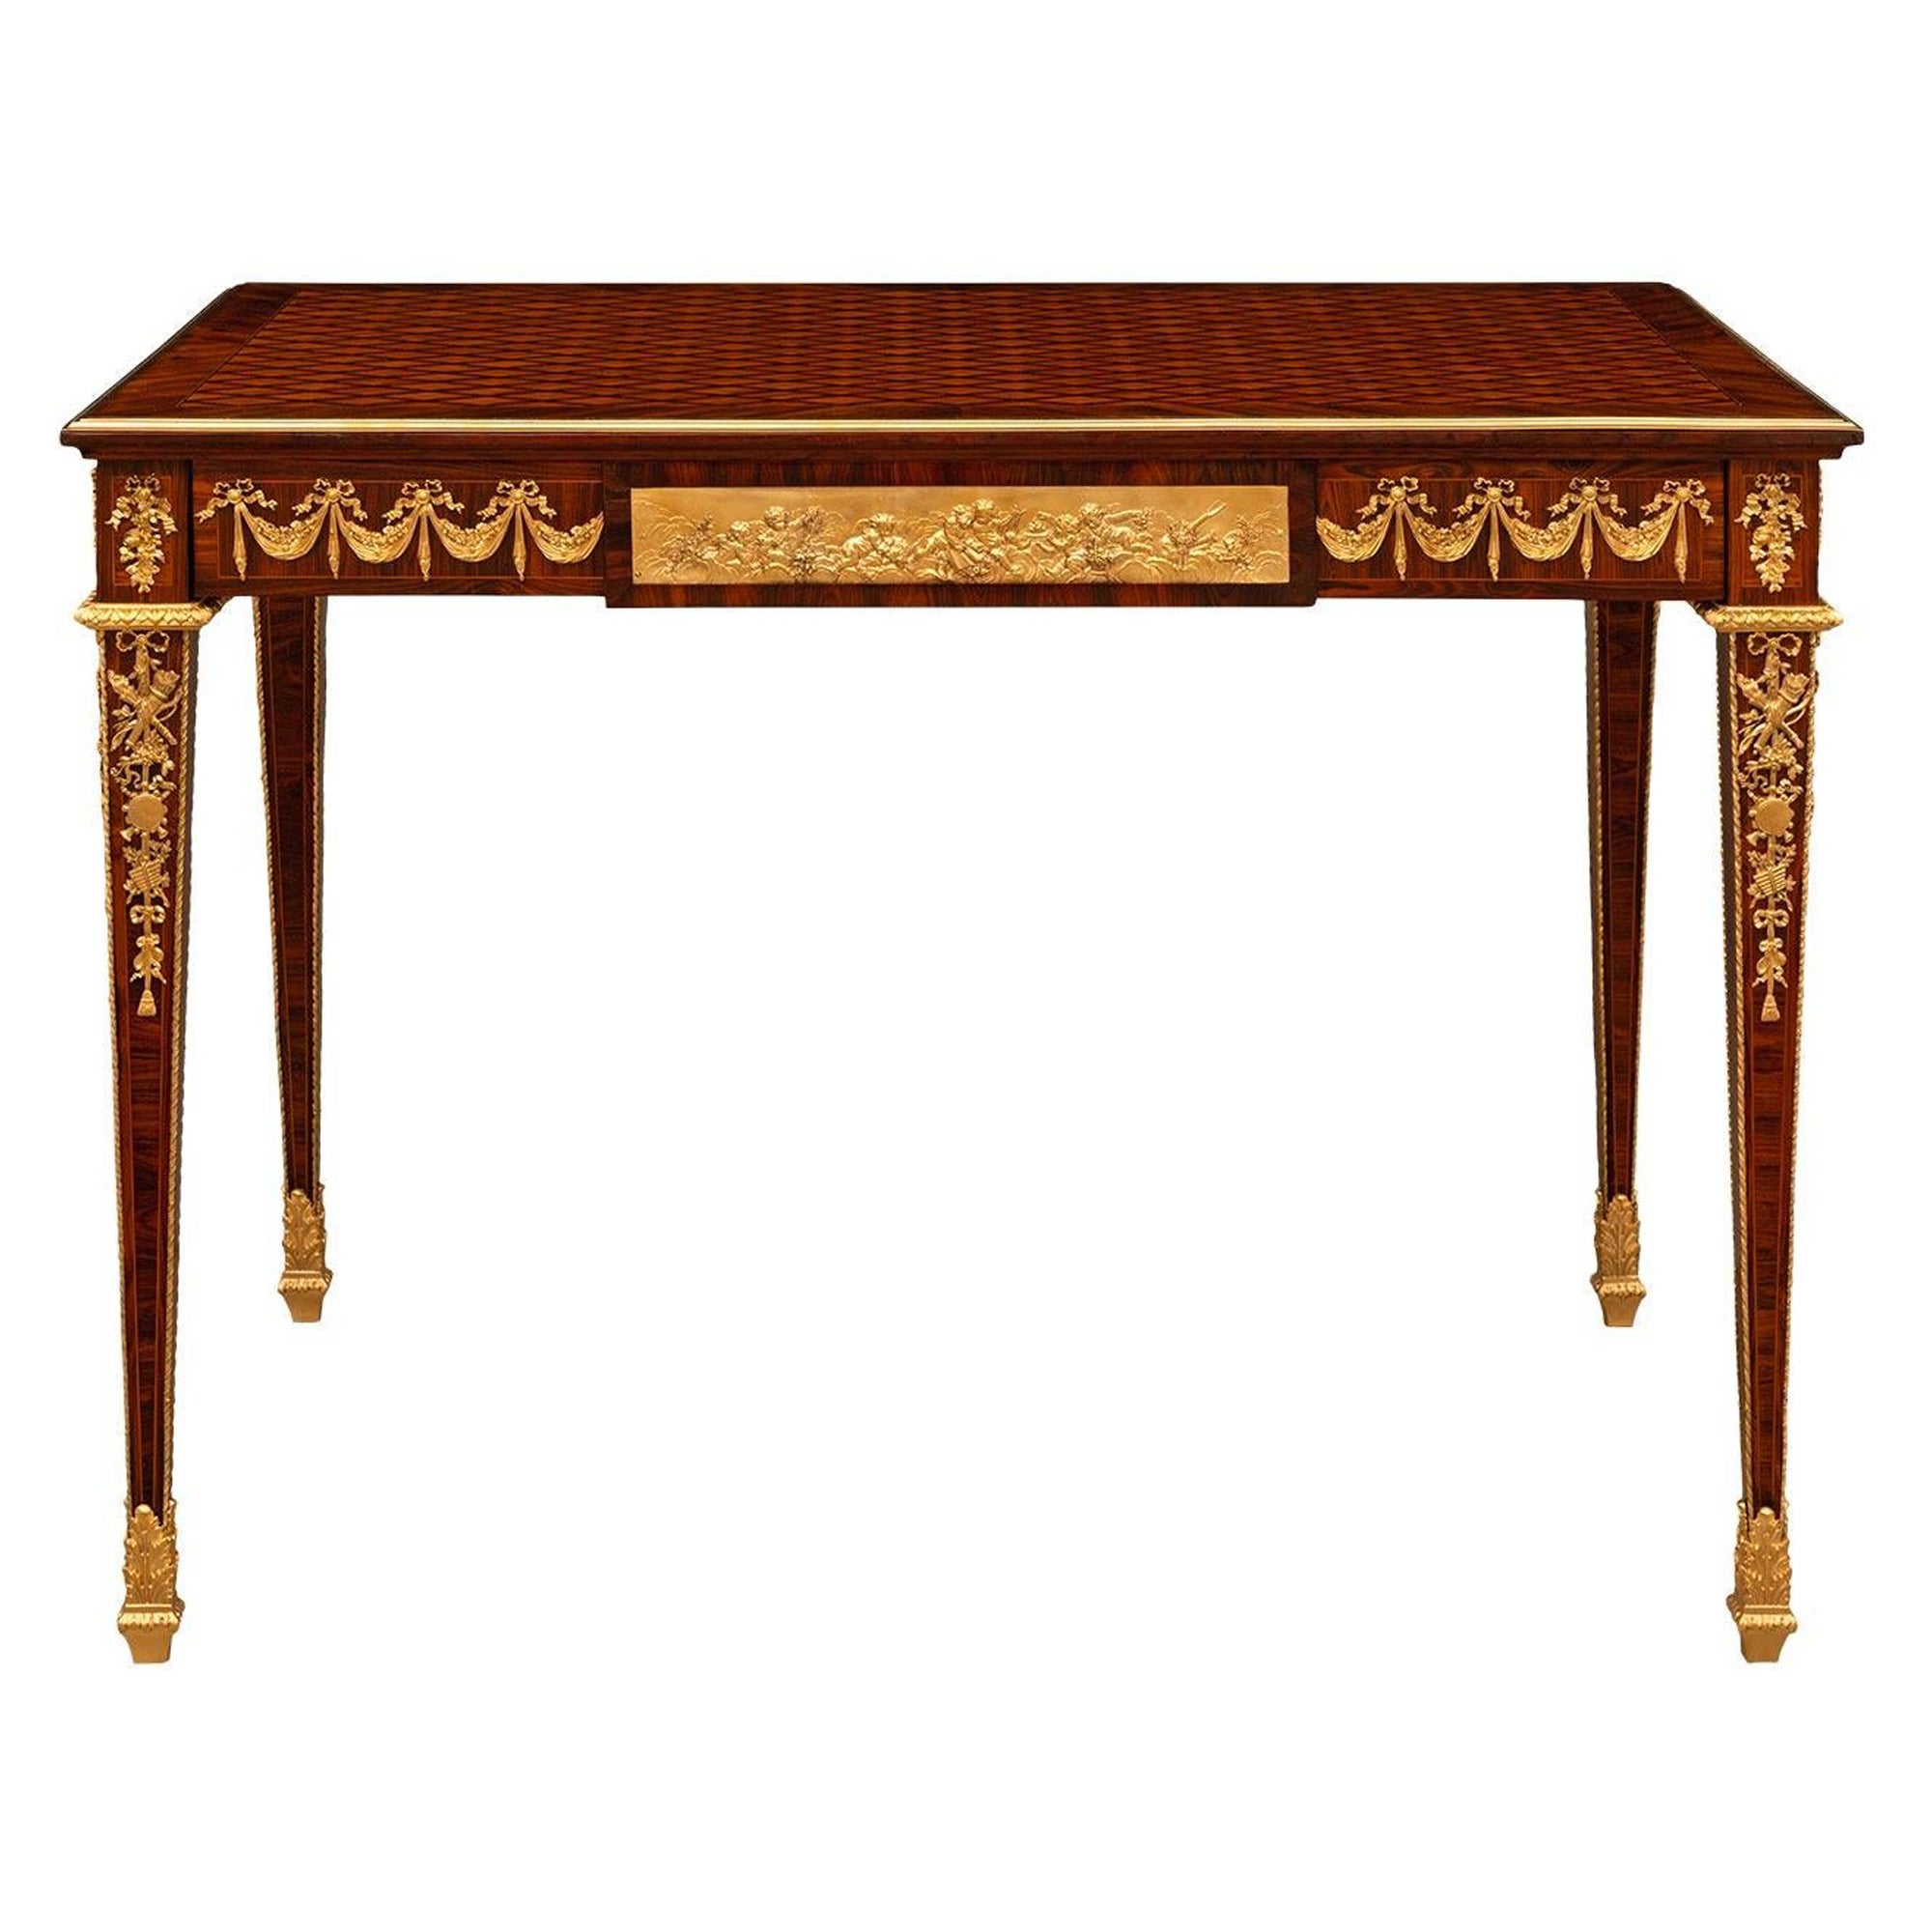 Table centrale en acajou, bois de roi et bronze doré, de style Louis XVI, du 19e siècle